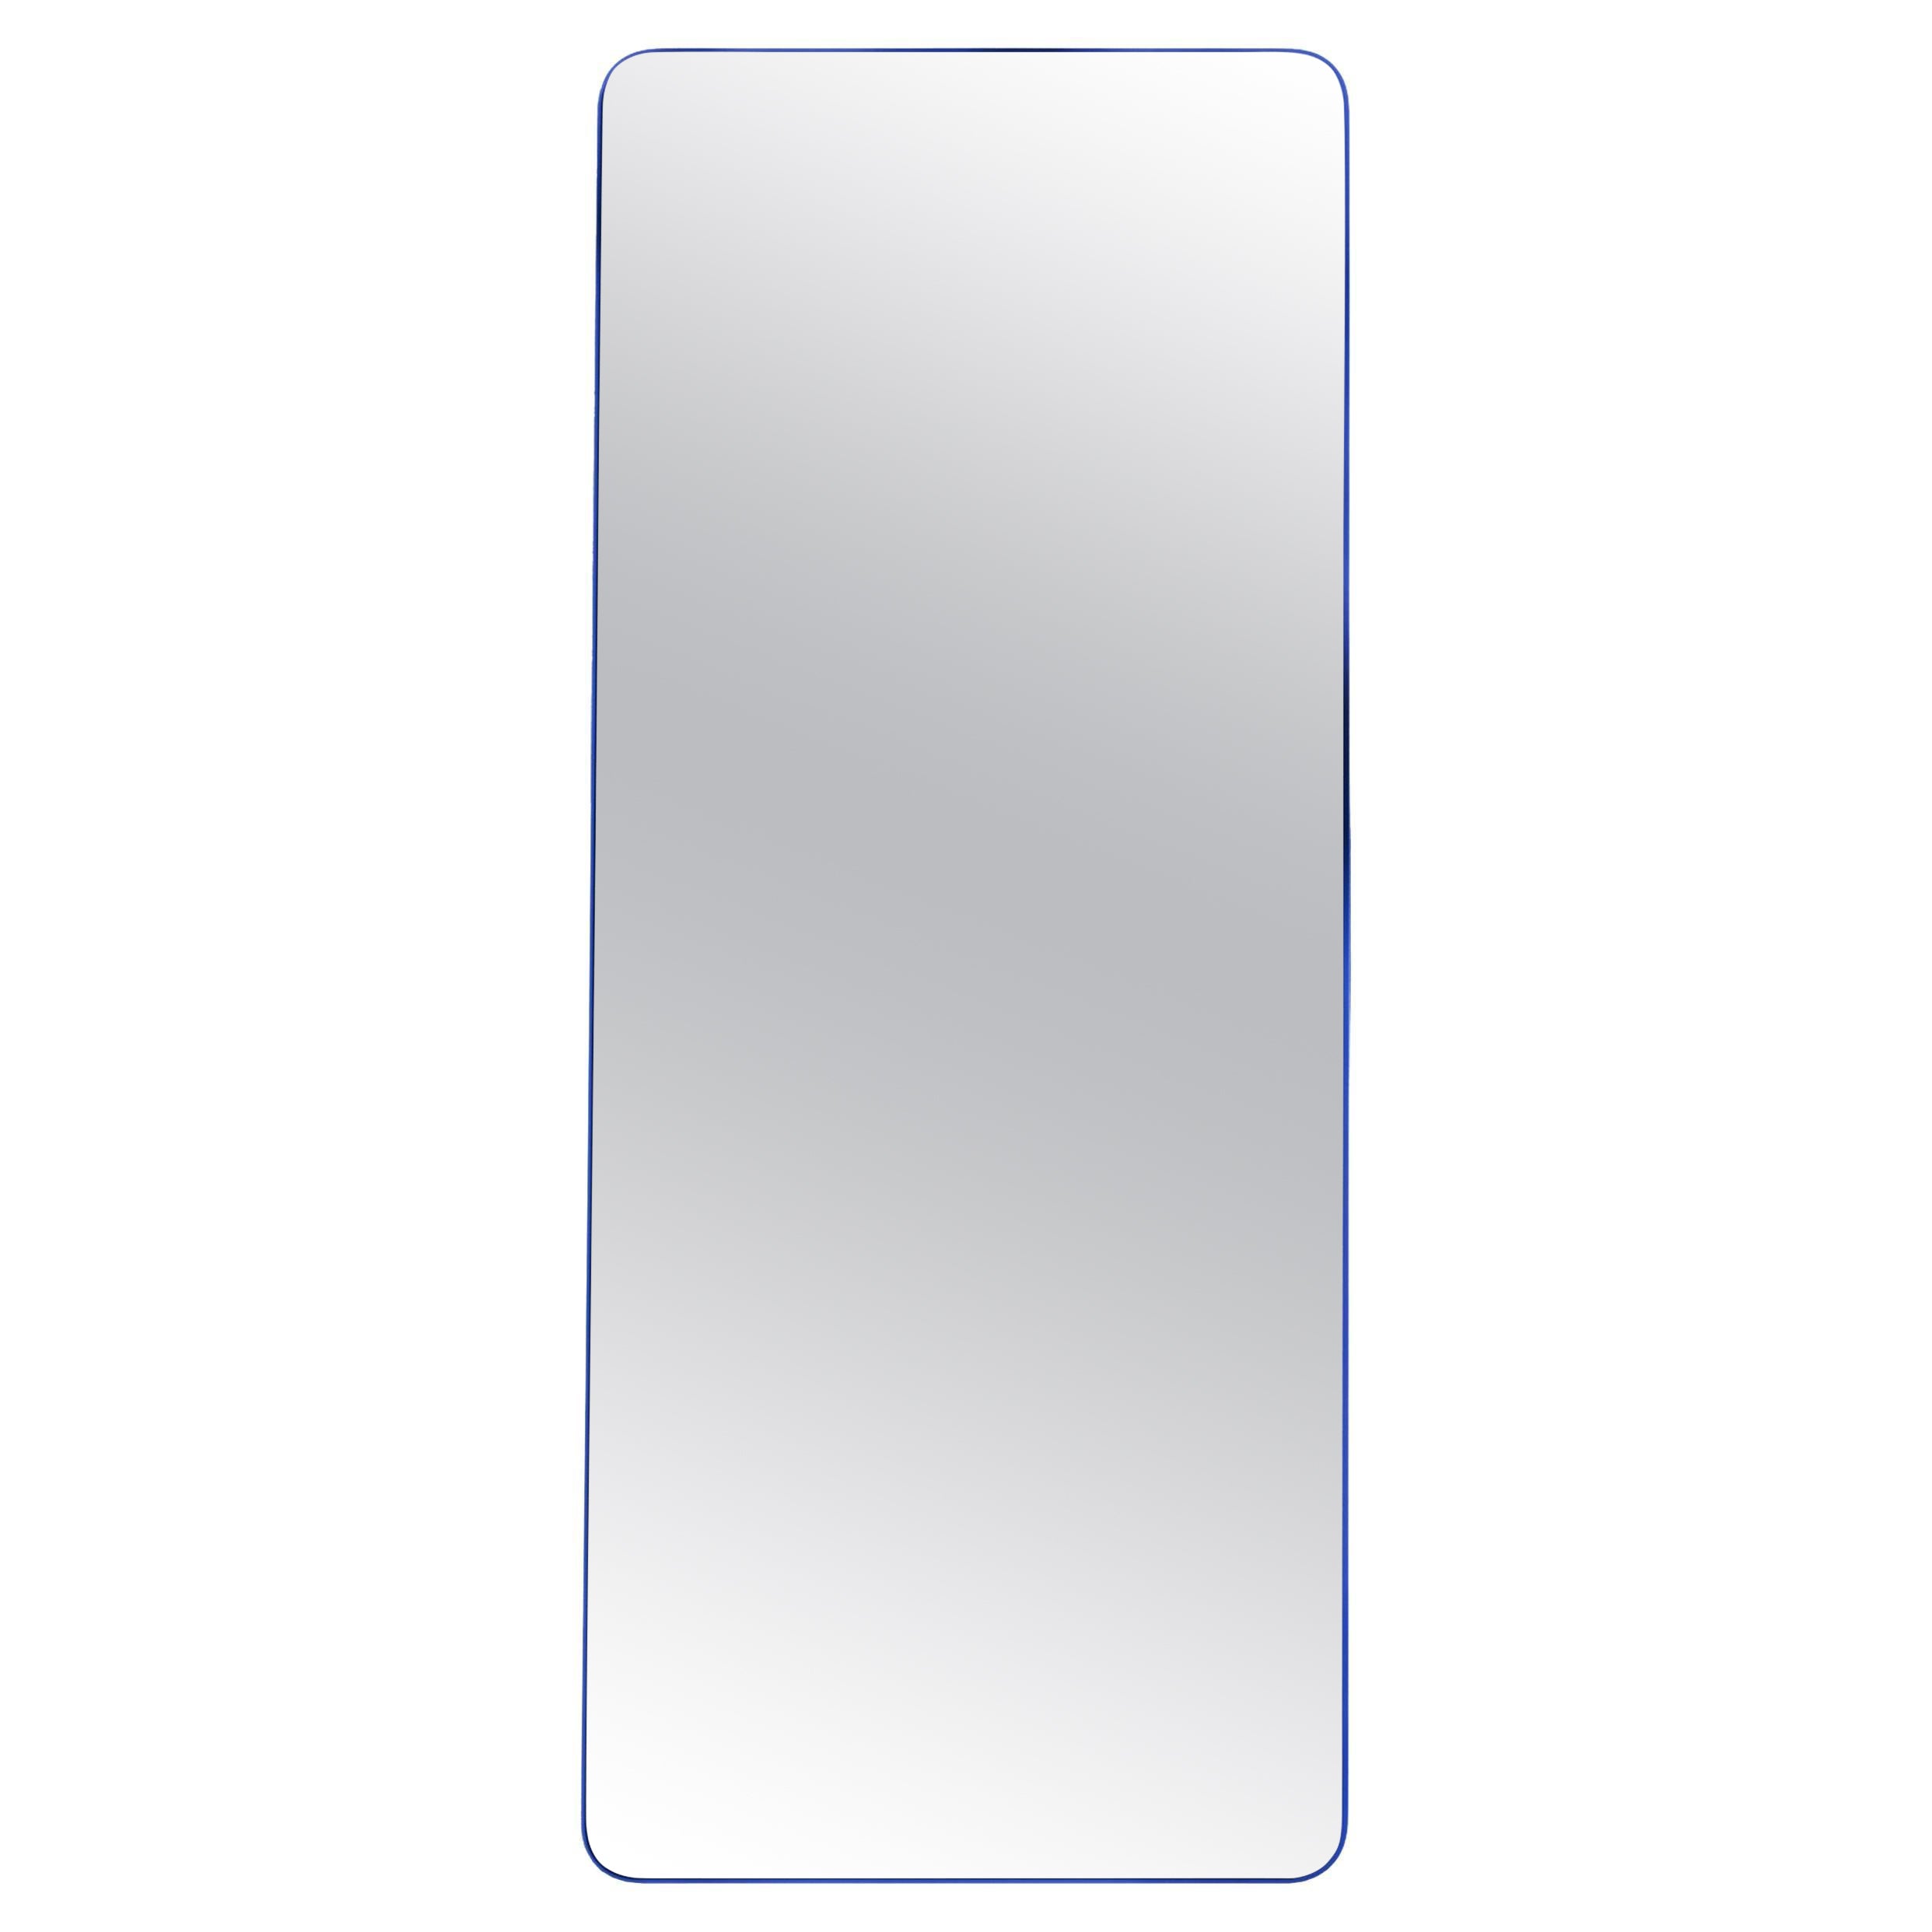 Miroir contemporain Loveself 05 d'Oitoproducts, cadre bleu, 180 cm